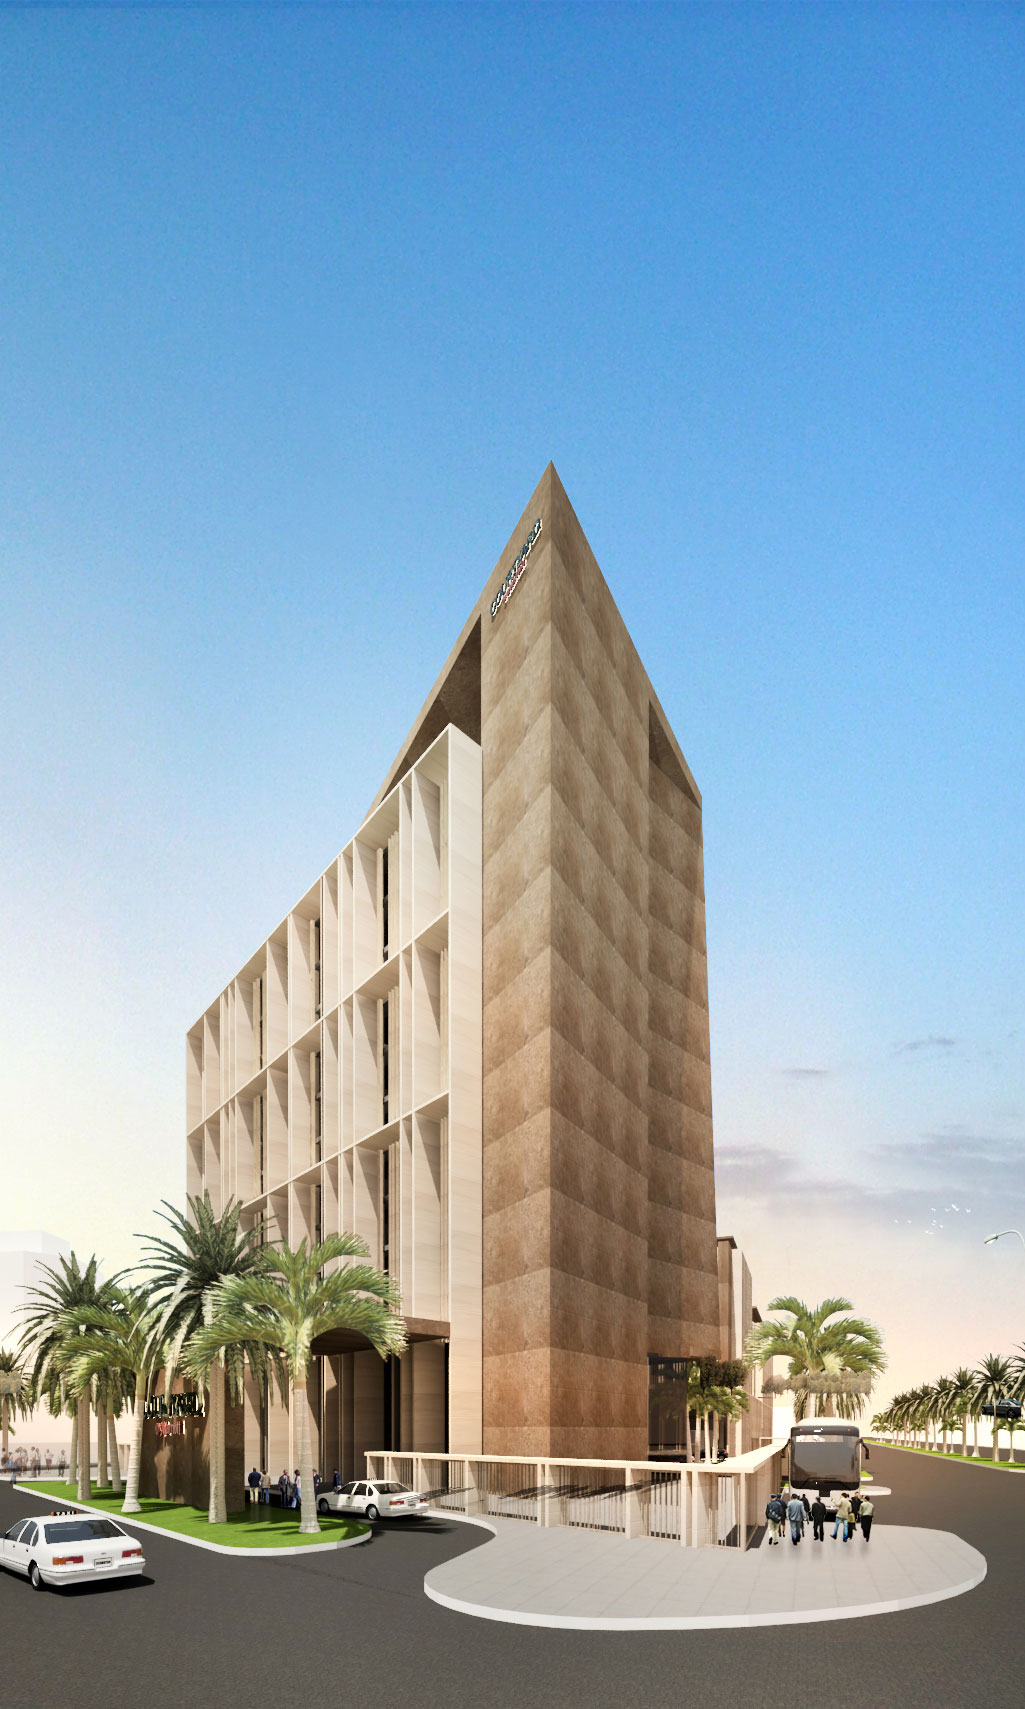 Al Khobar Hotel - Avci Architects